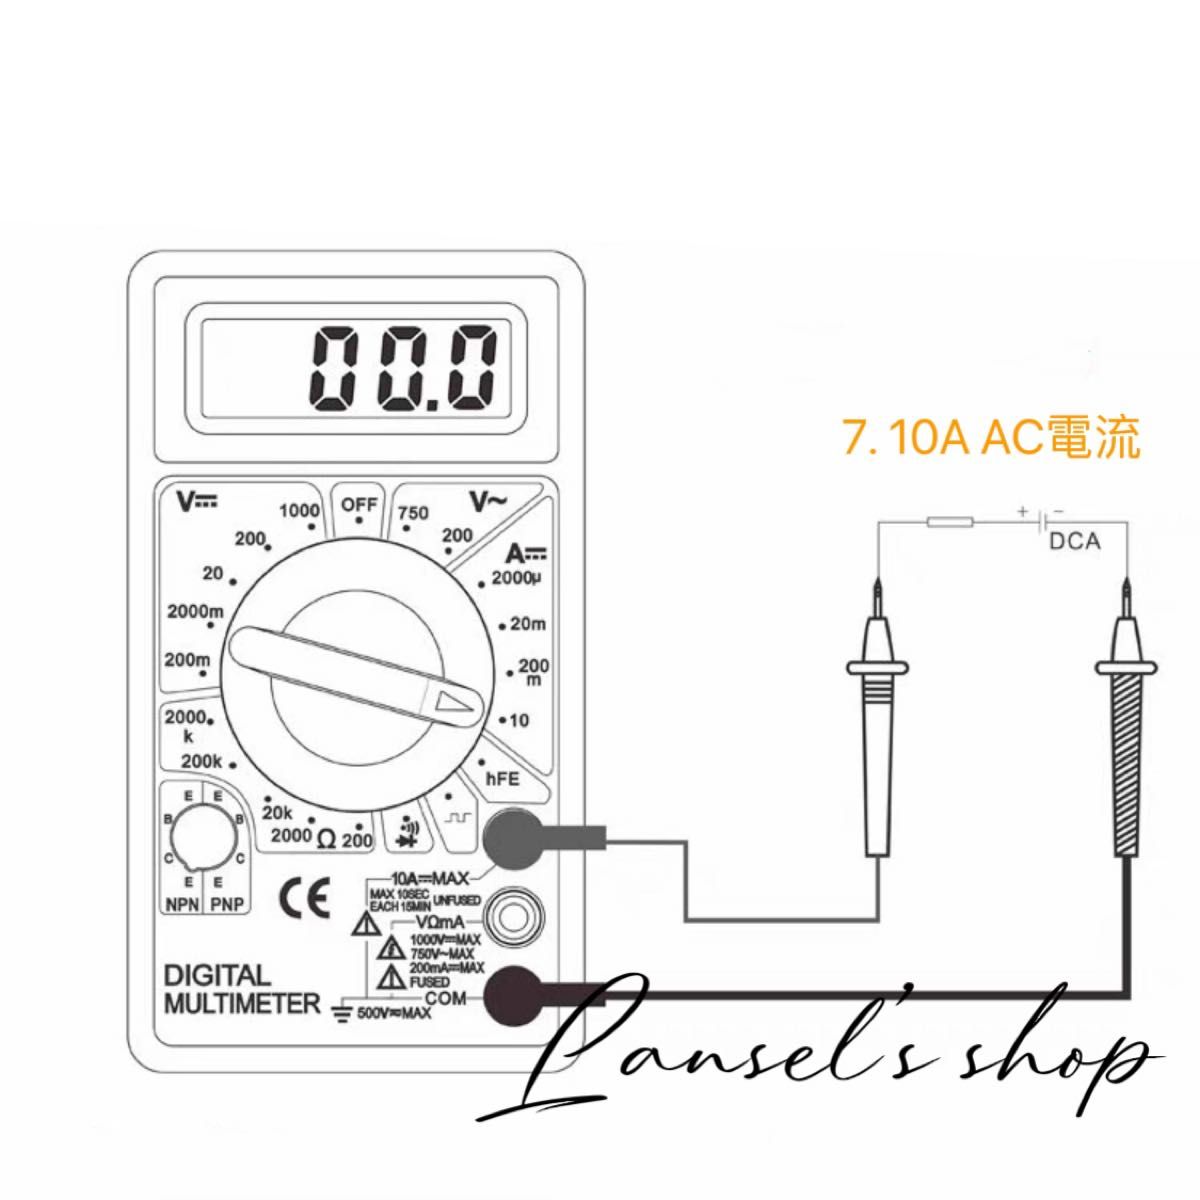 デジタルマルチメーター デジタルテスター 導通ブザー 電流 電圧 抵抗 計測 DT-830D LCD AC/DC 高精度 &f